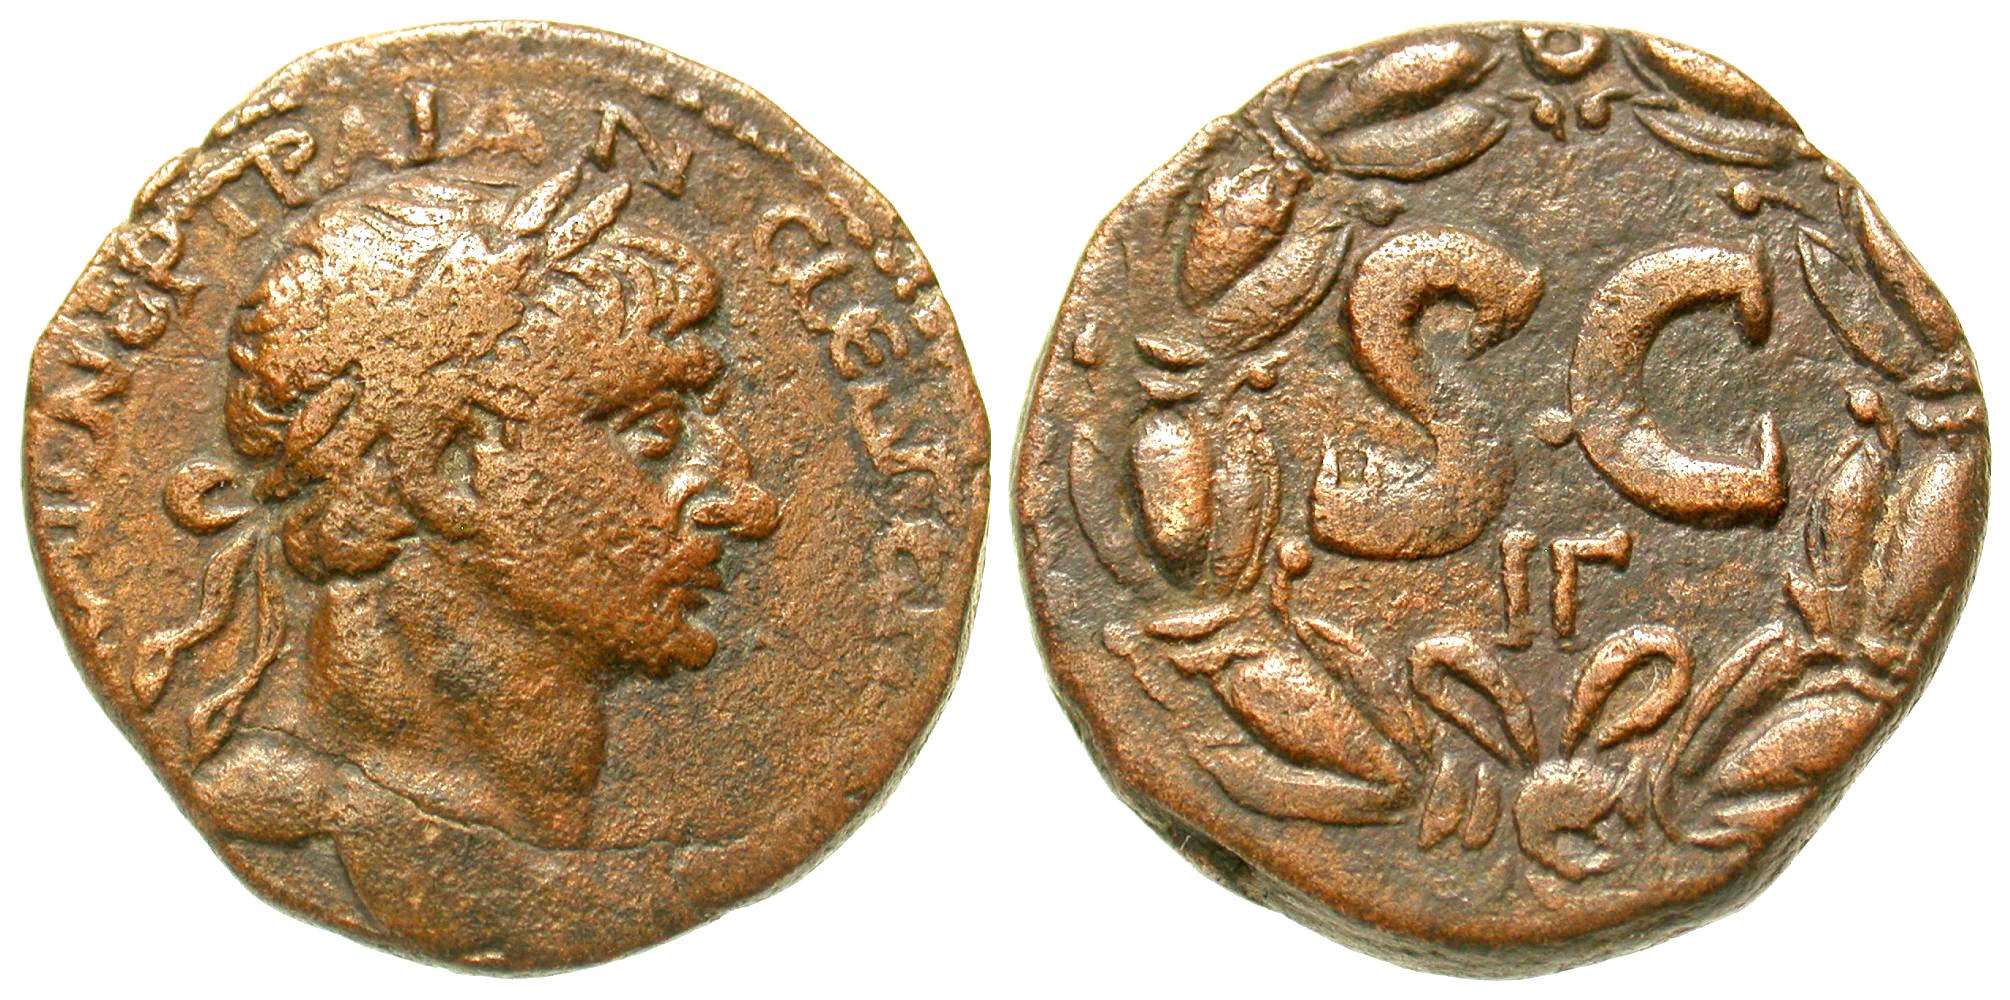 Syria, Seleucis and Pieria. Antiochia ad Orontem. Trajan. A.D. 98-117. AE as. Rare. 